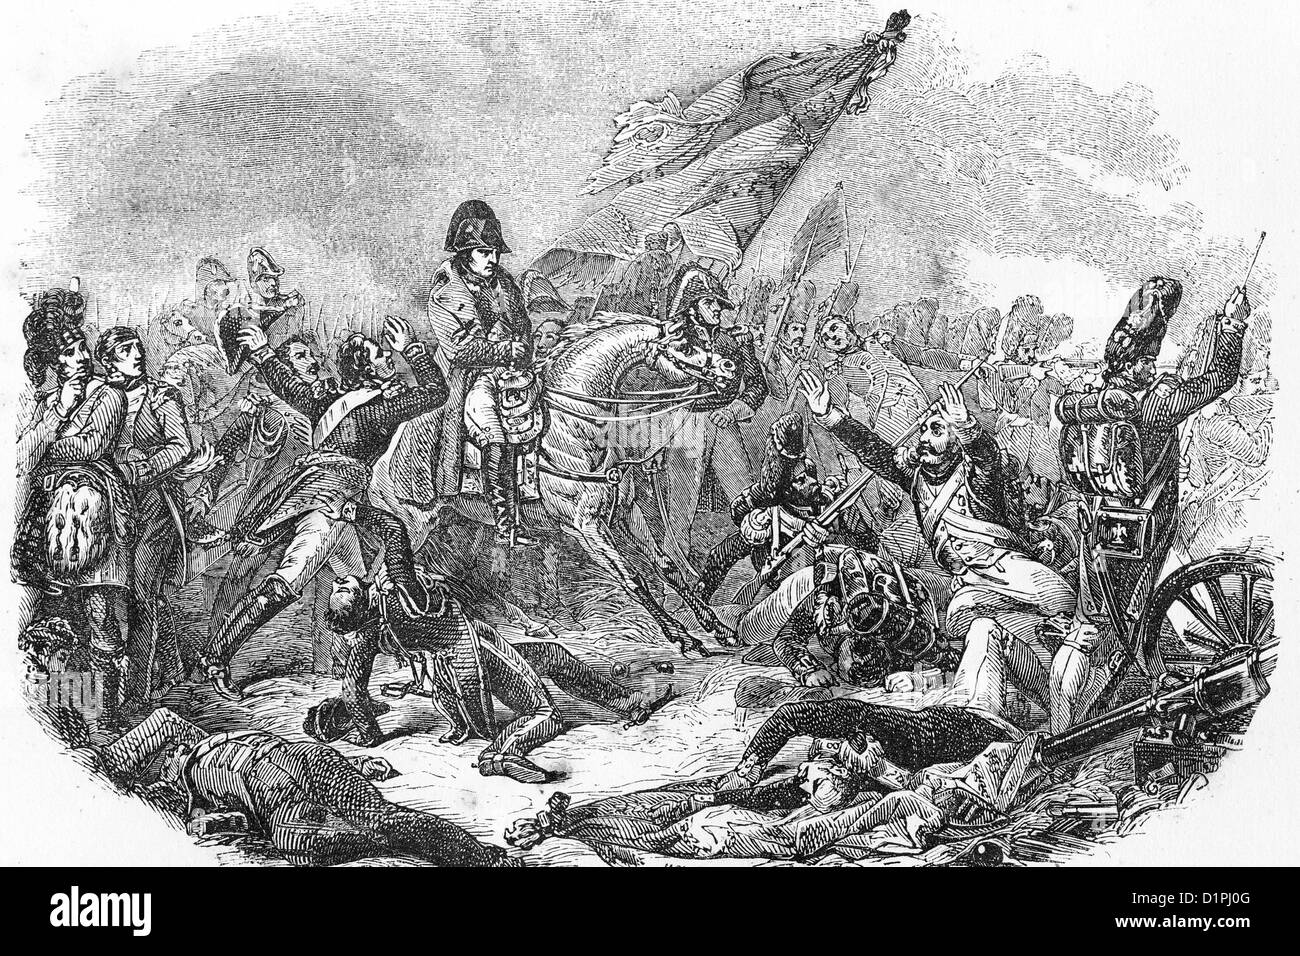 Napoléon Bonaparte (1769-1821), empereur de France. Bataille de Waterloo, 18thJune 1815. Illustration antique, 1855. Banque D'Images